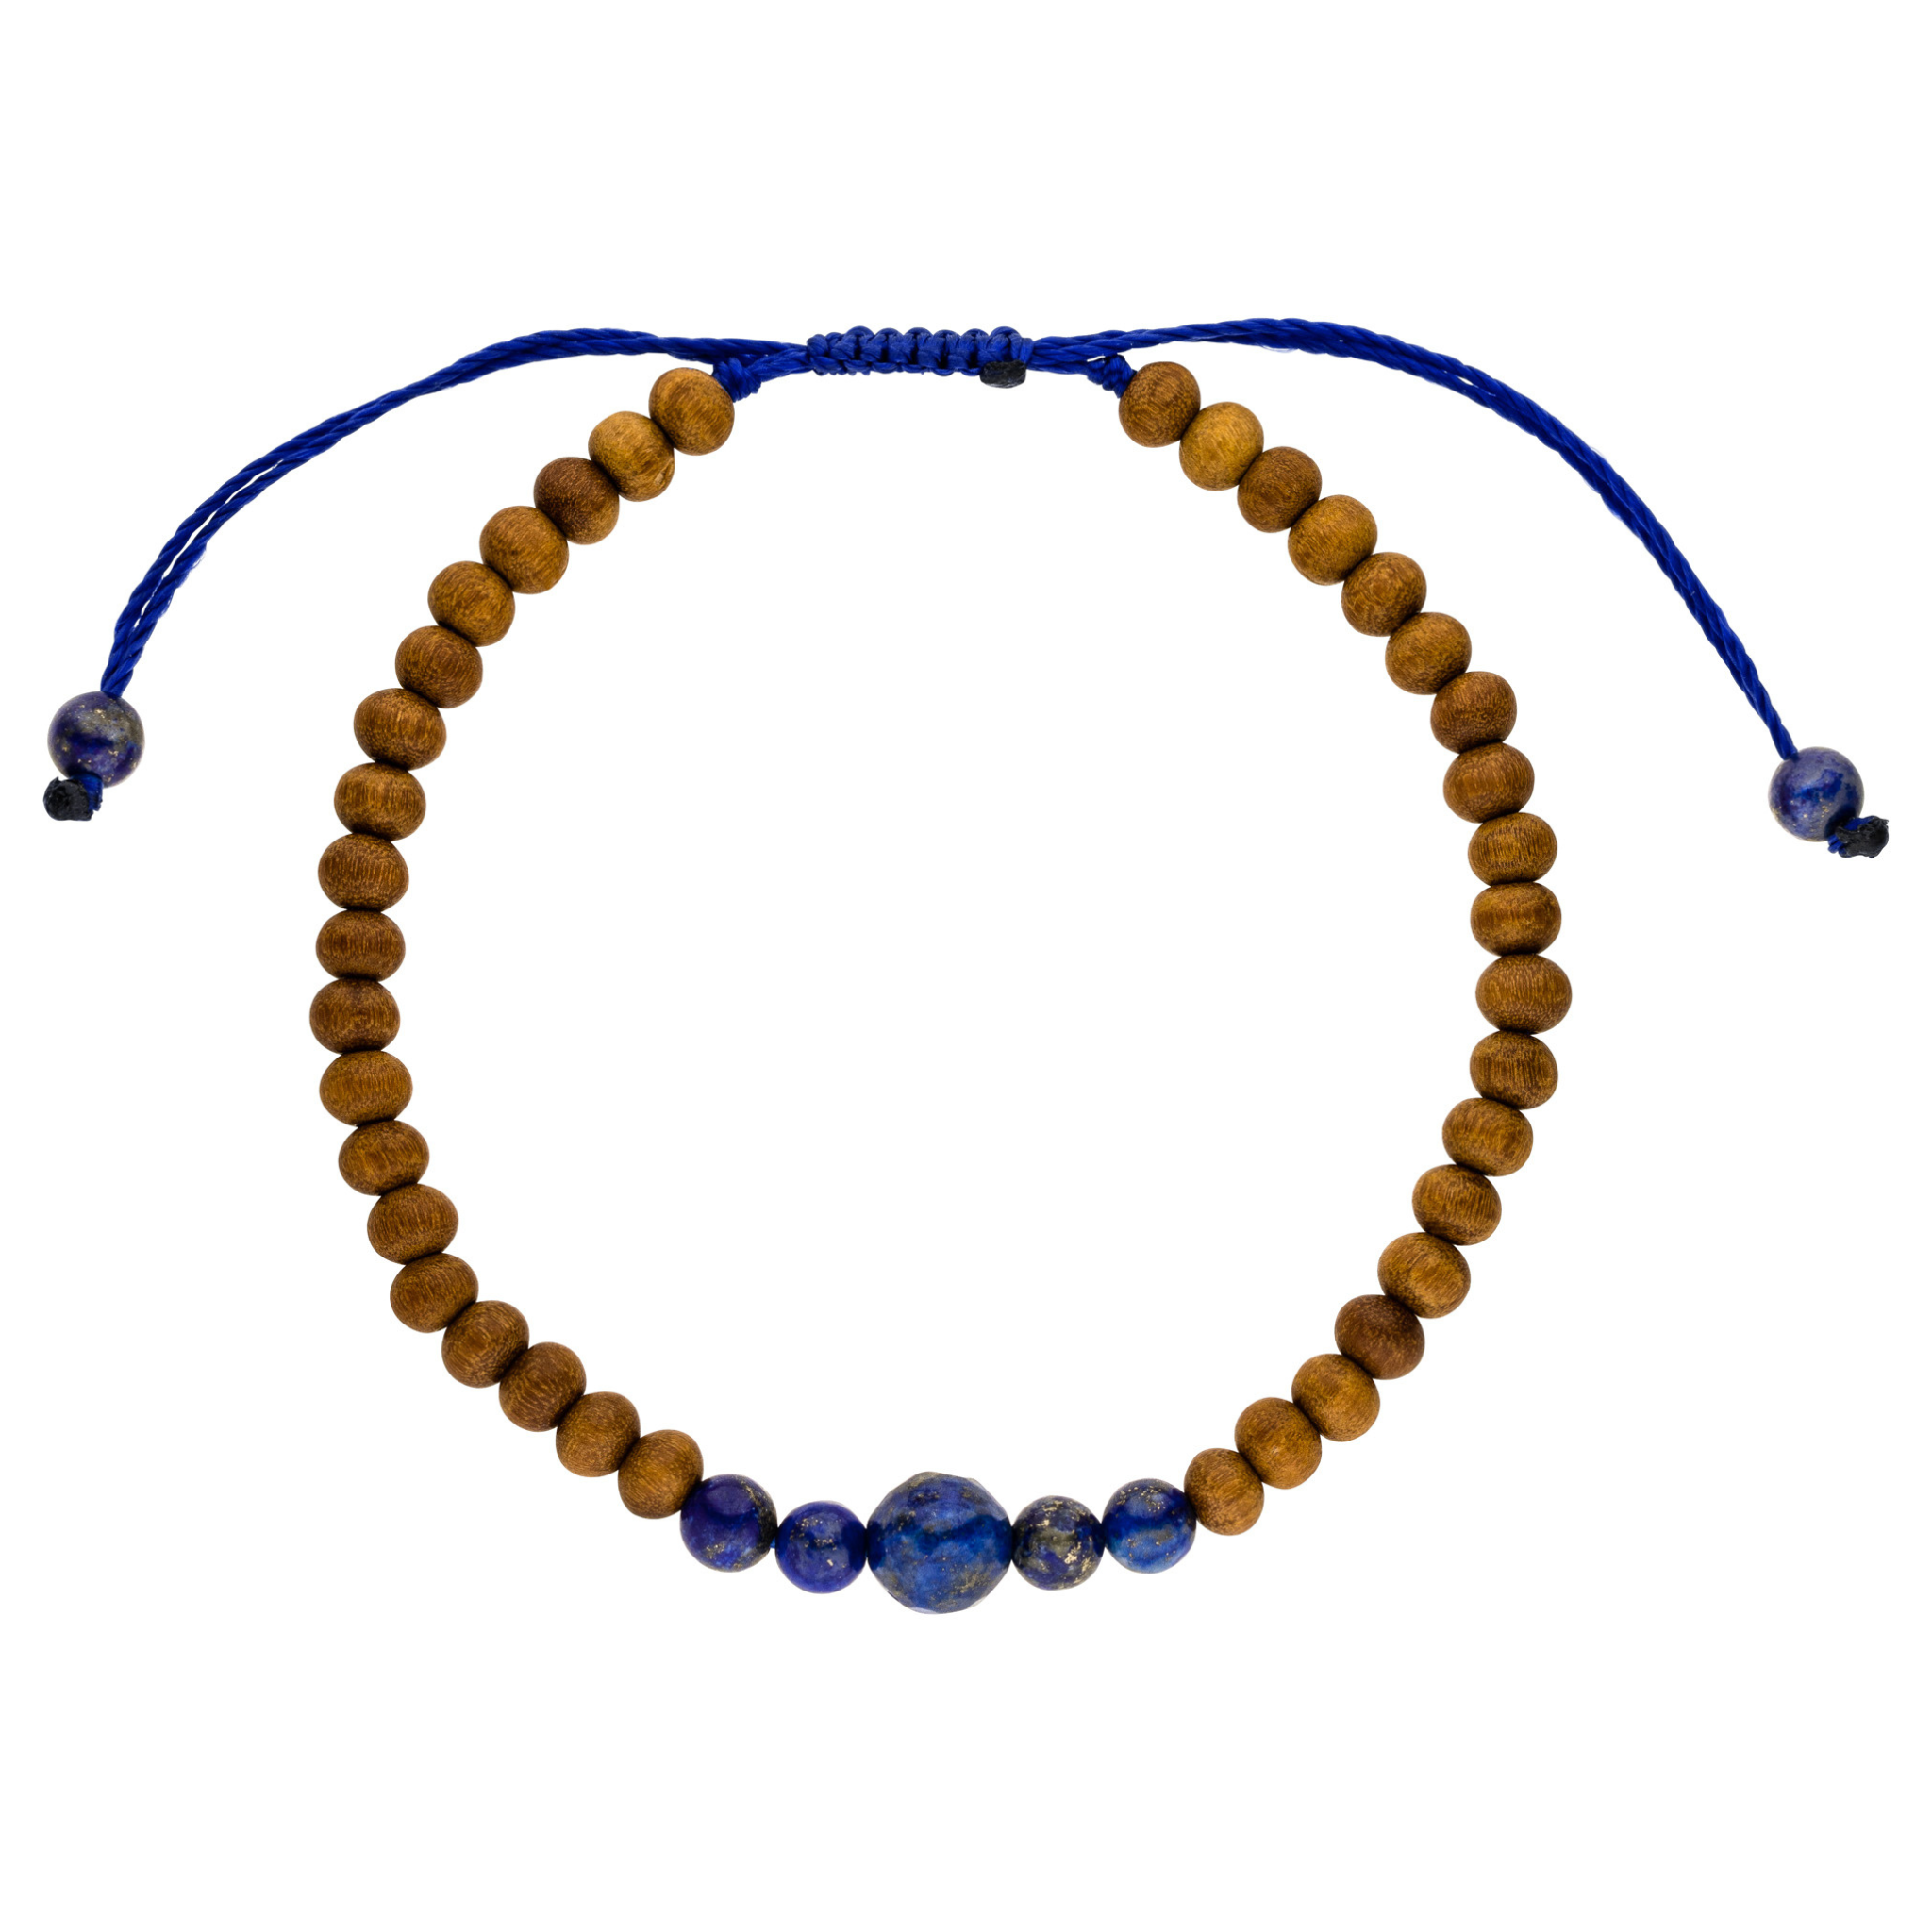 Chakra Armband Sitrnchakra mit blauen Lapislazuli Steinen und beruhigenden Sandelholz Perlen. Einheitsgröße. 